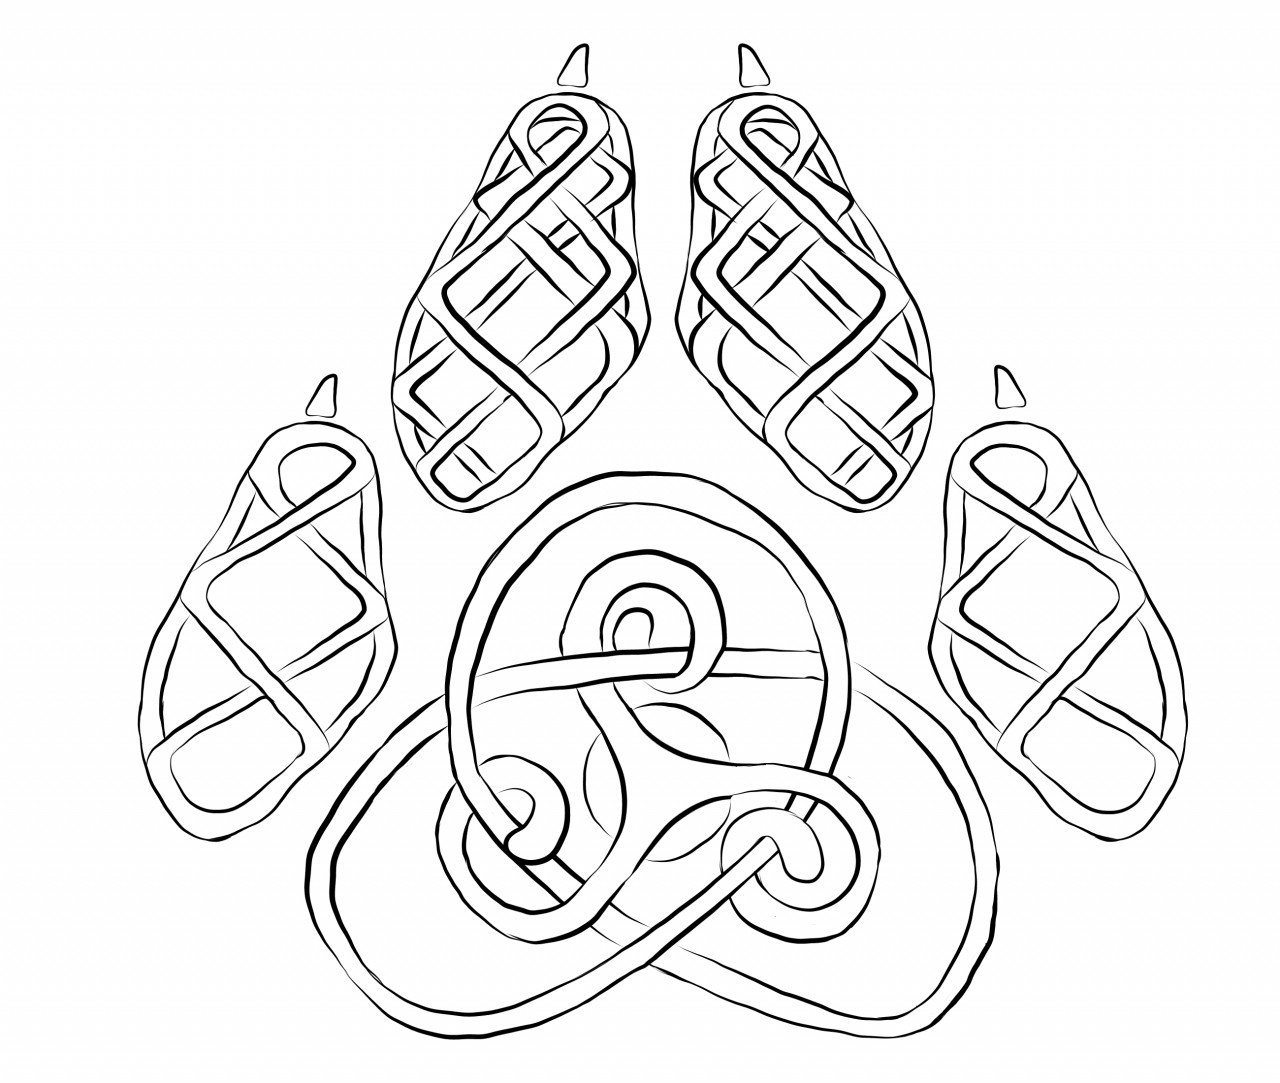 The trinity knot tattoo idea | TattoosAI